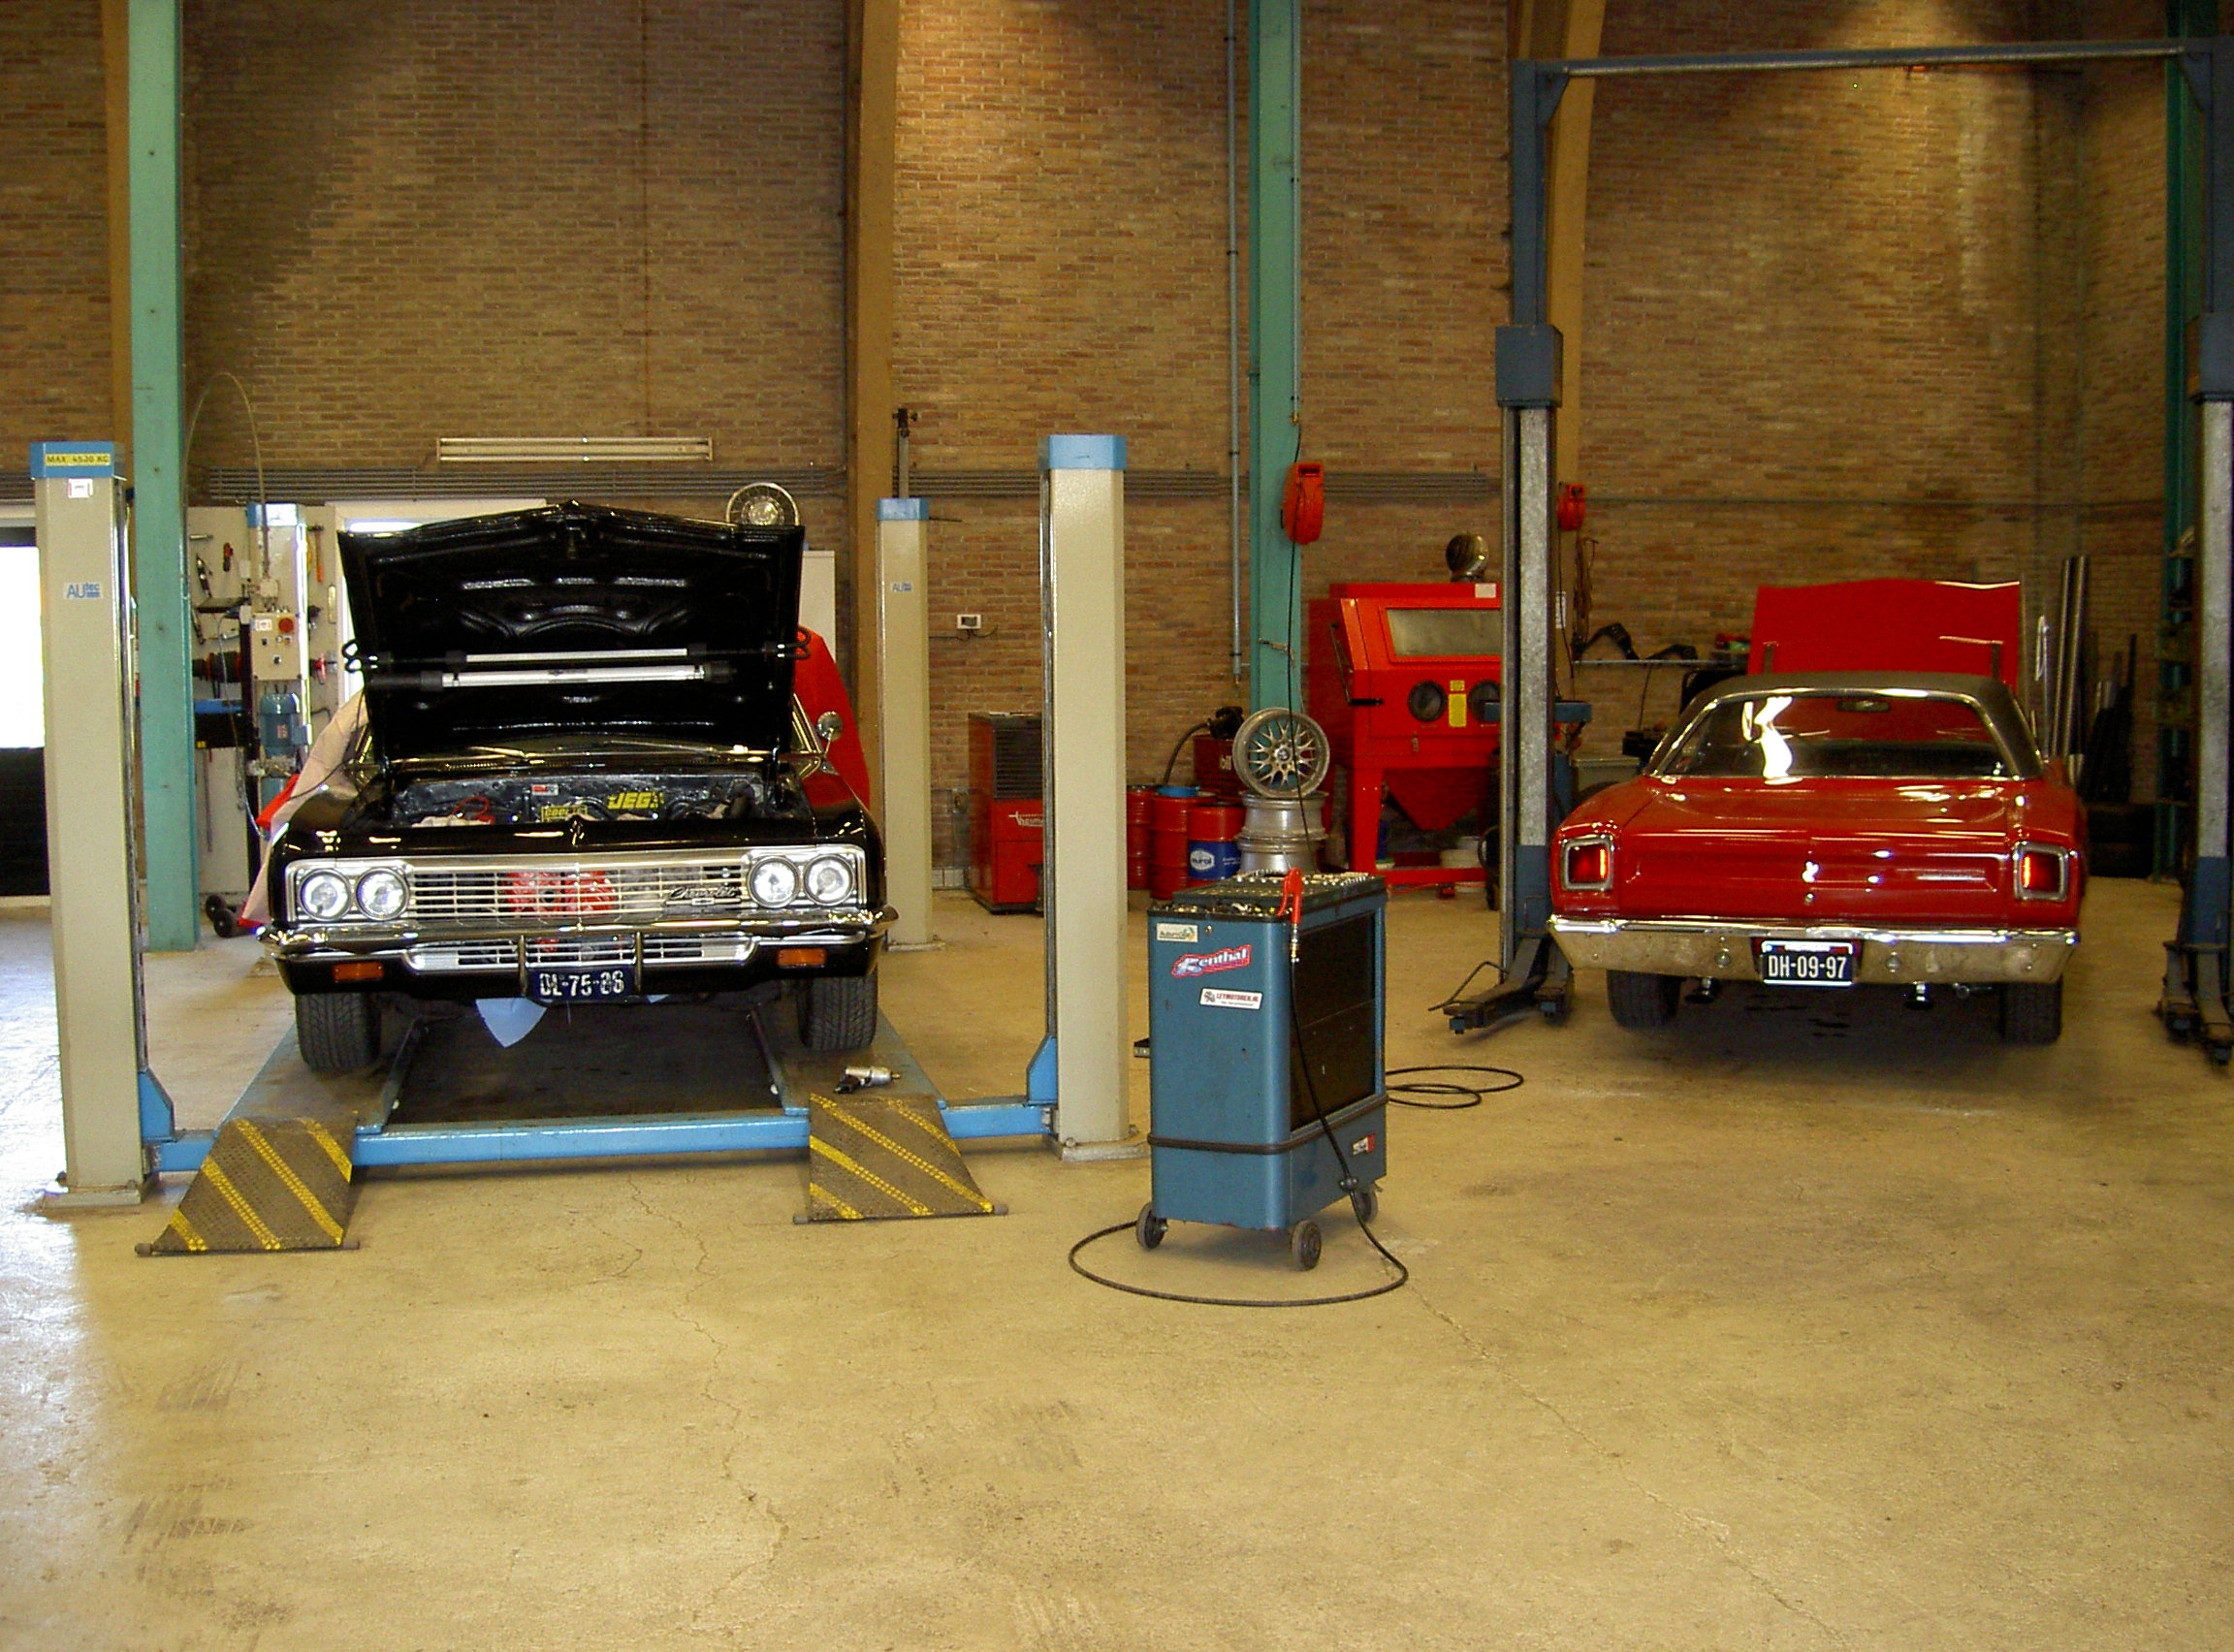 Leymotoren - Garage Van der Leij Sint Annaparochie (img nr 5)